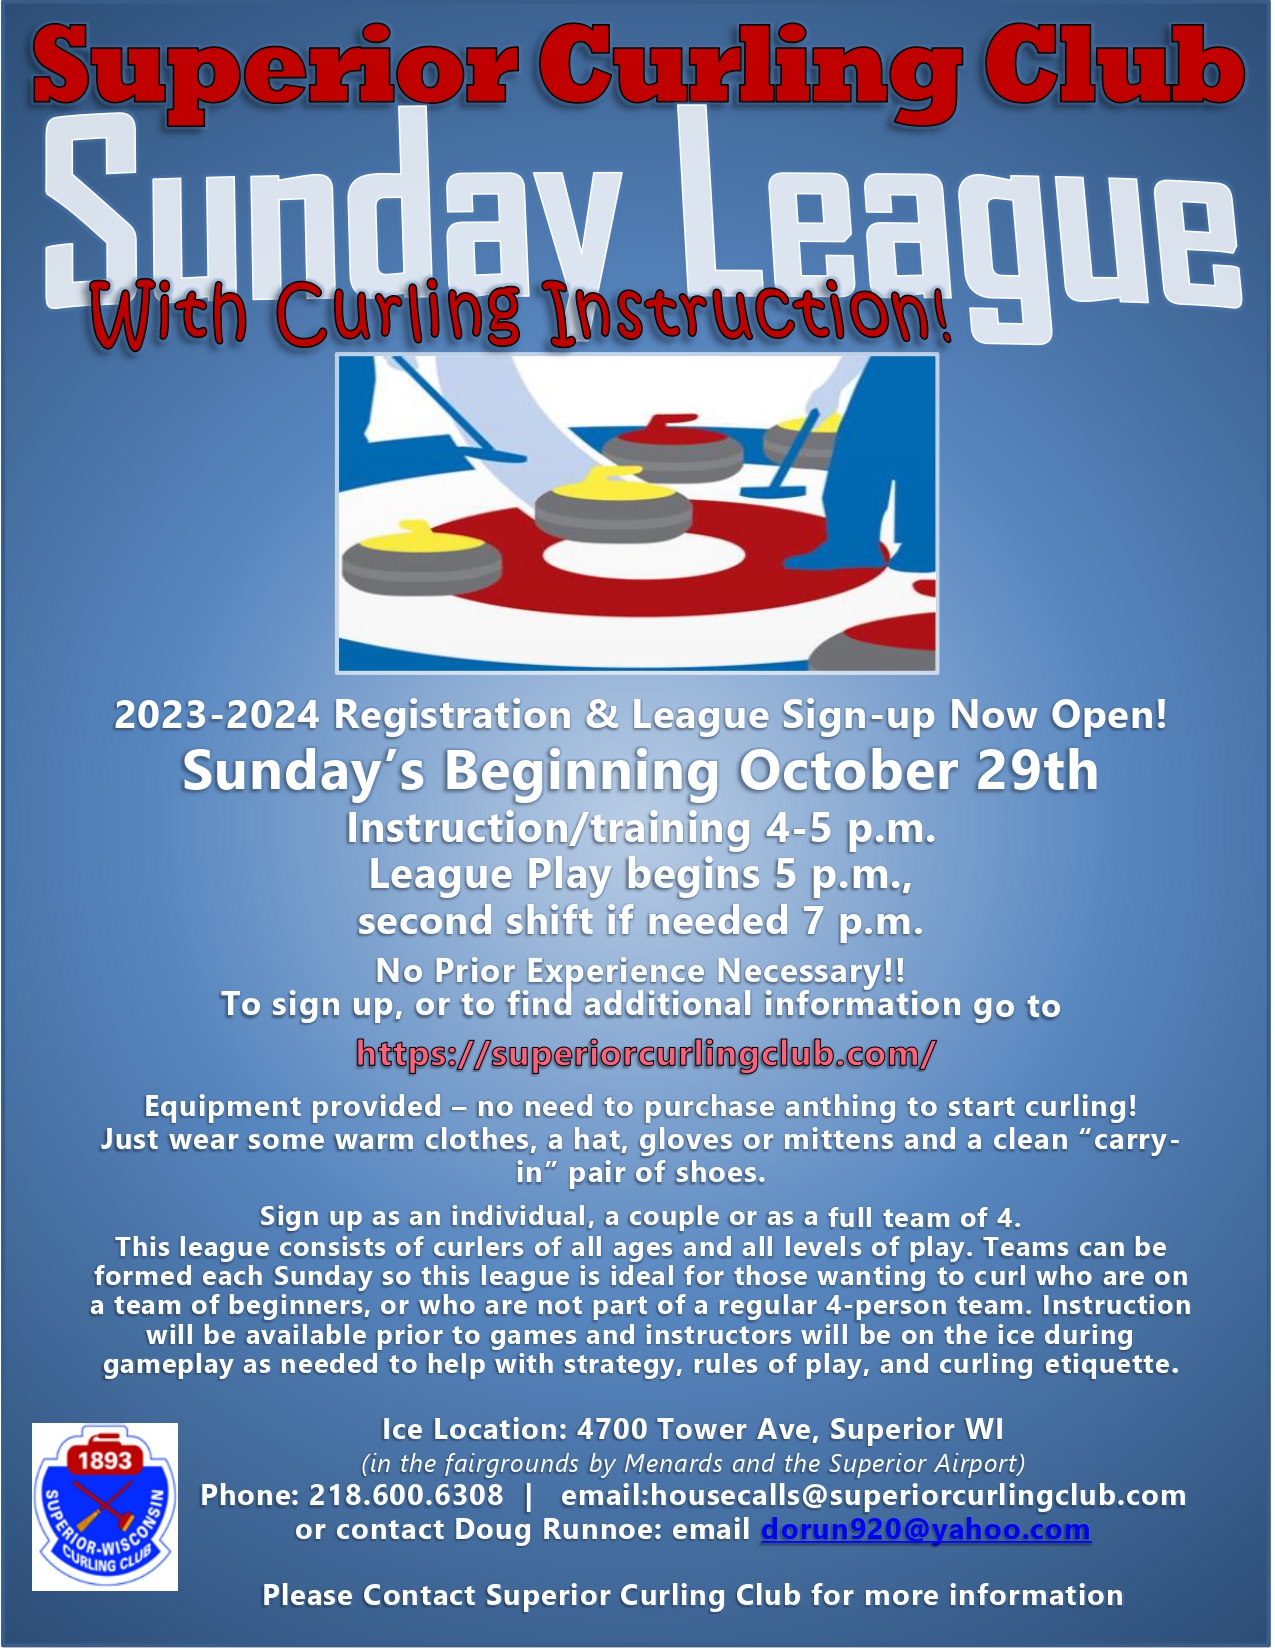 SCC Sunday League Flier 2023 2024 09 26 2023 page 0001